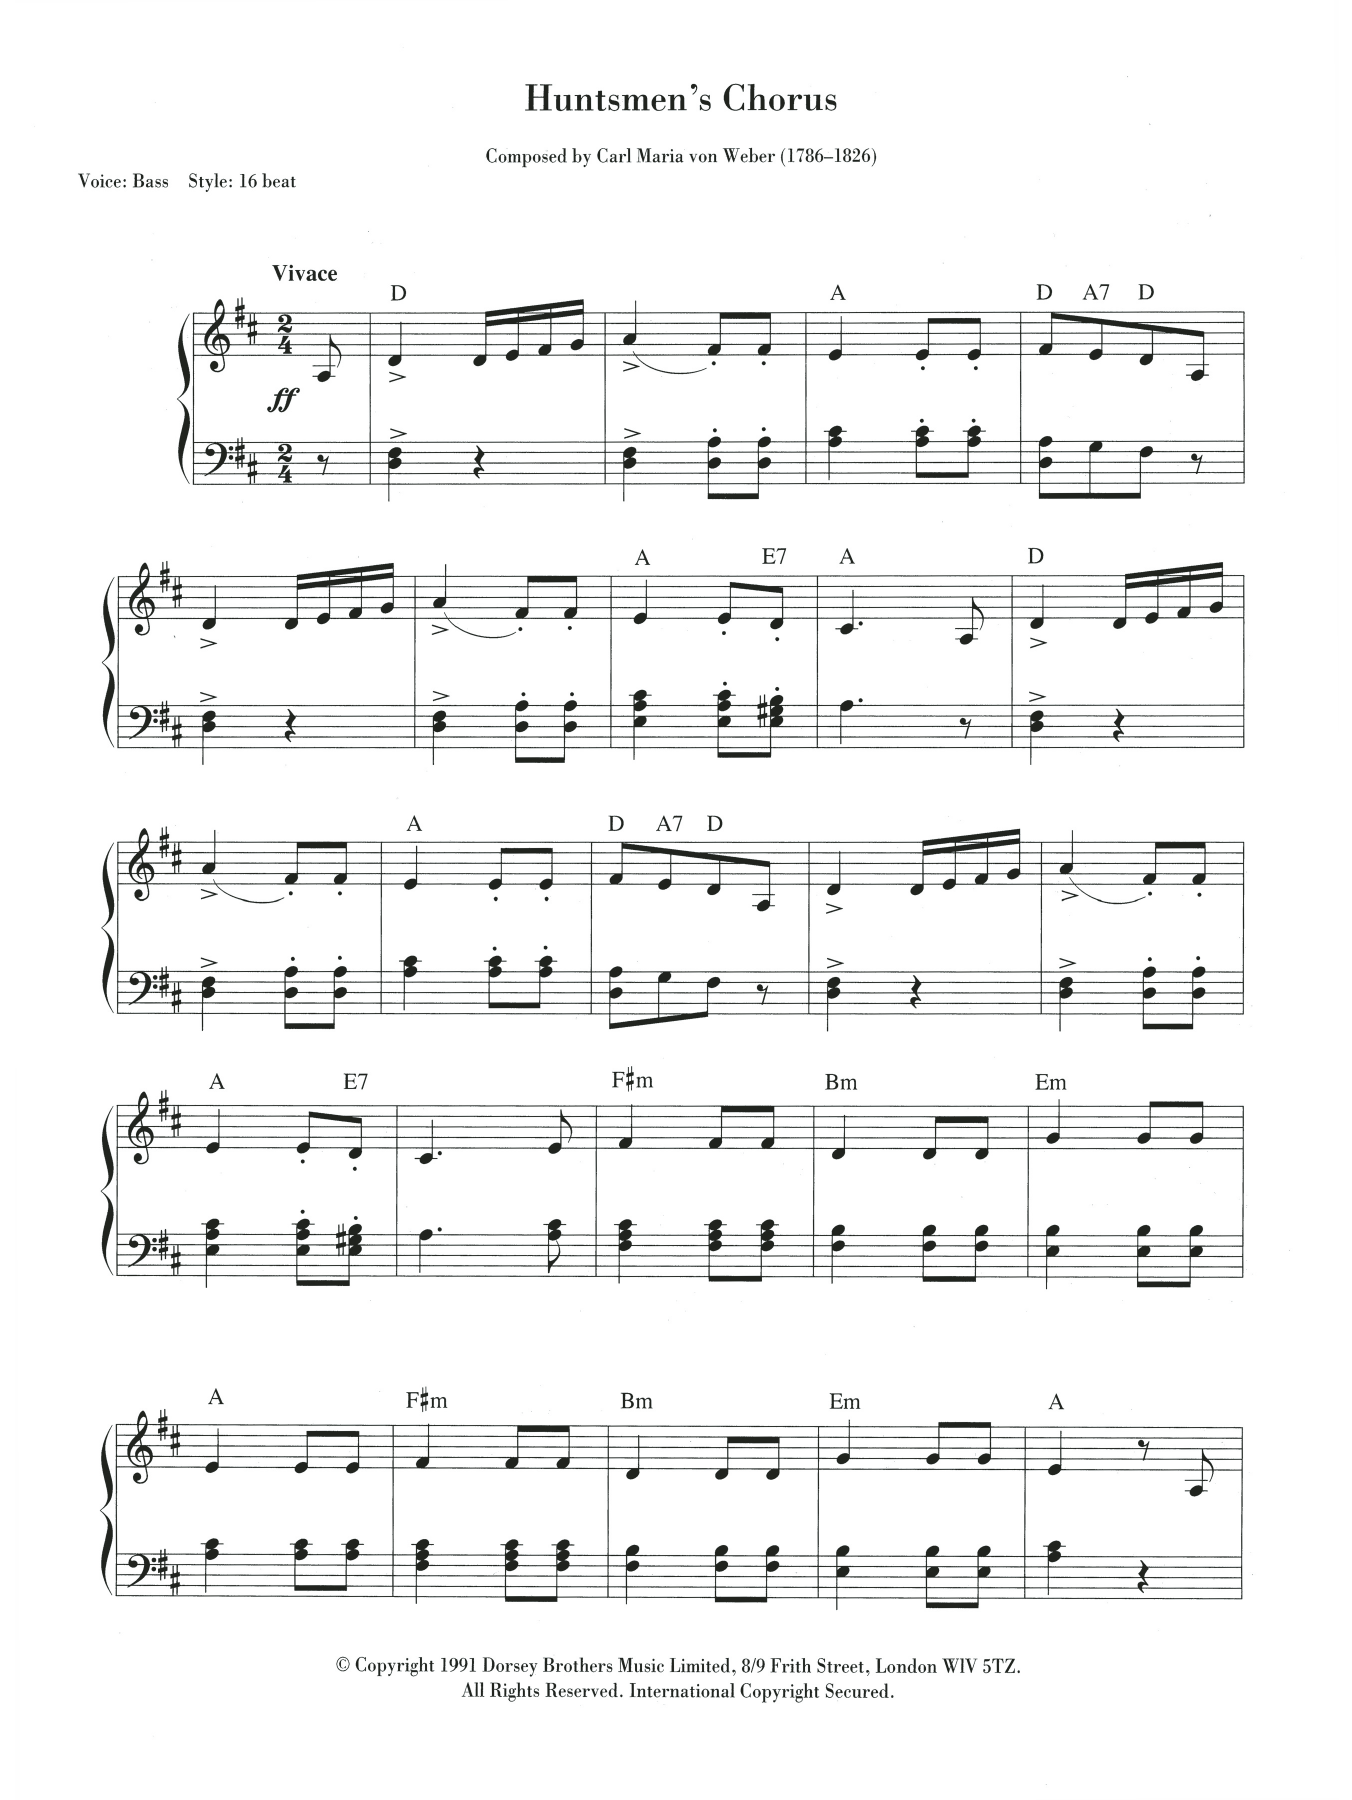 Download Carl Maria von Weber The Huntsmen's Chorus Sheet Music